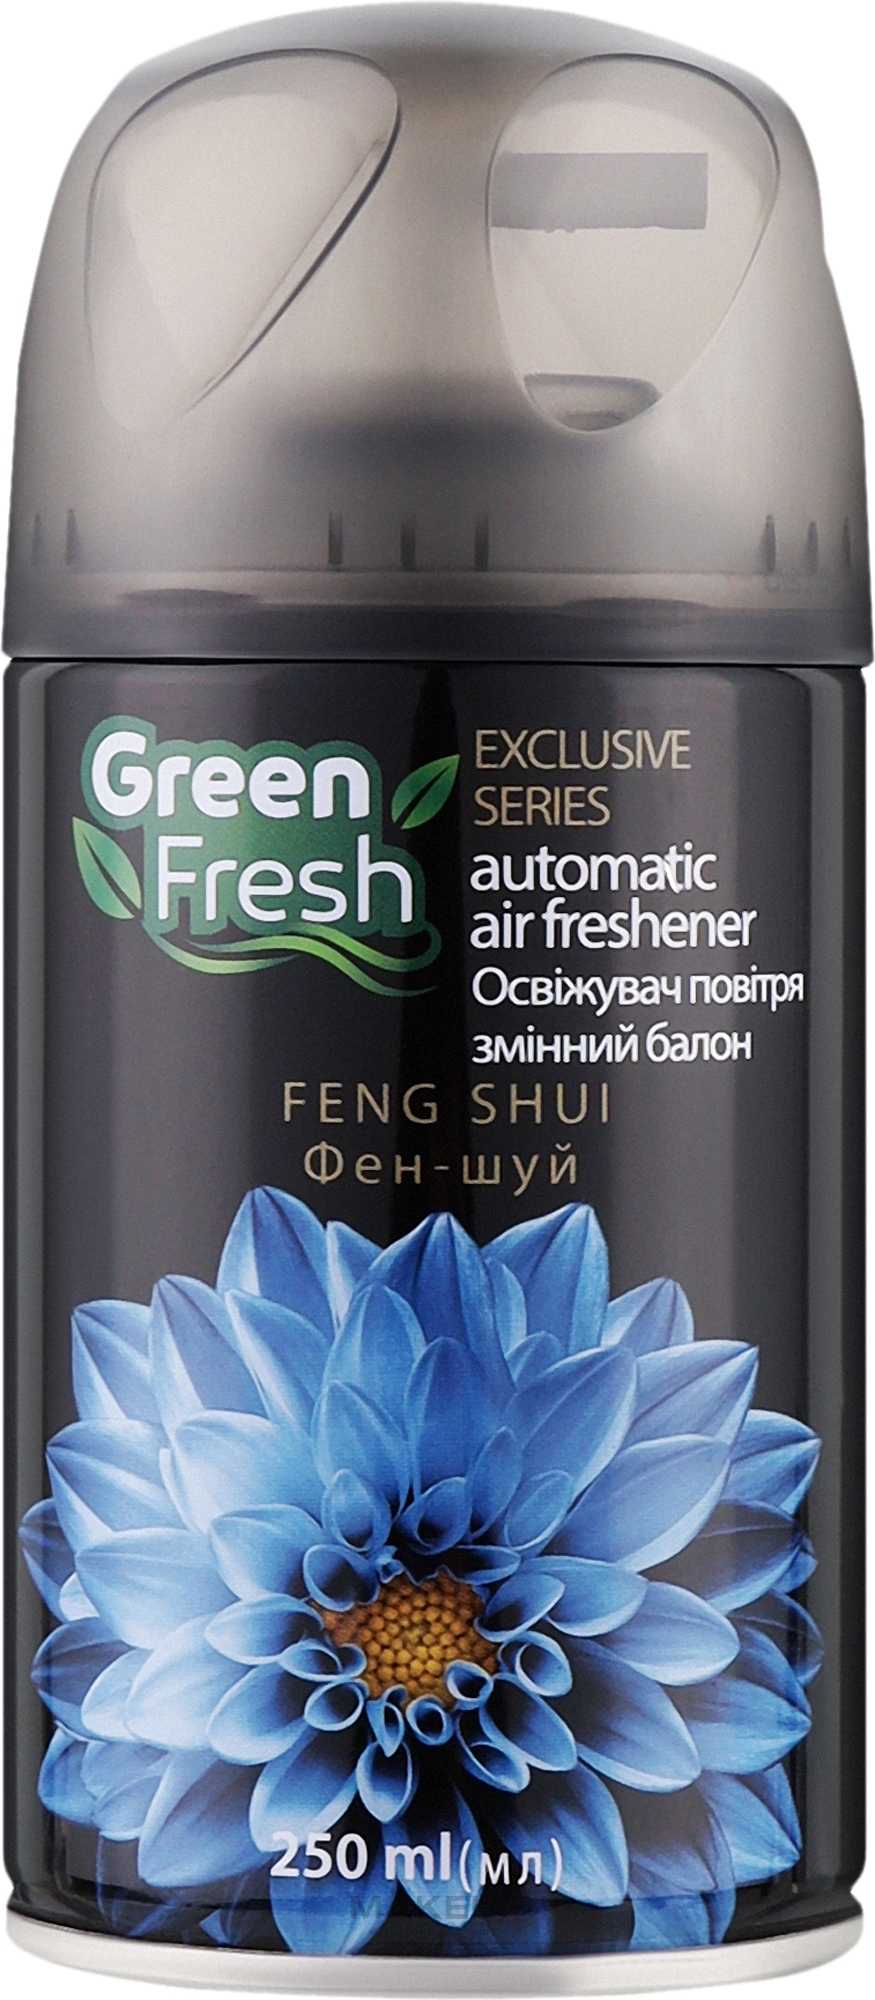 Змінний балон для автоматичного освіжувача повітря "Феншуй" - Green Fresh Automatic Air Freshener Feng Shui — фото 250ml